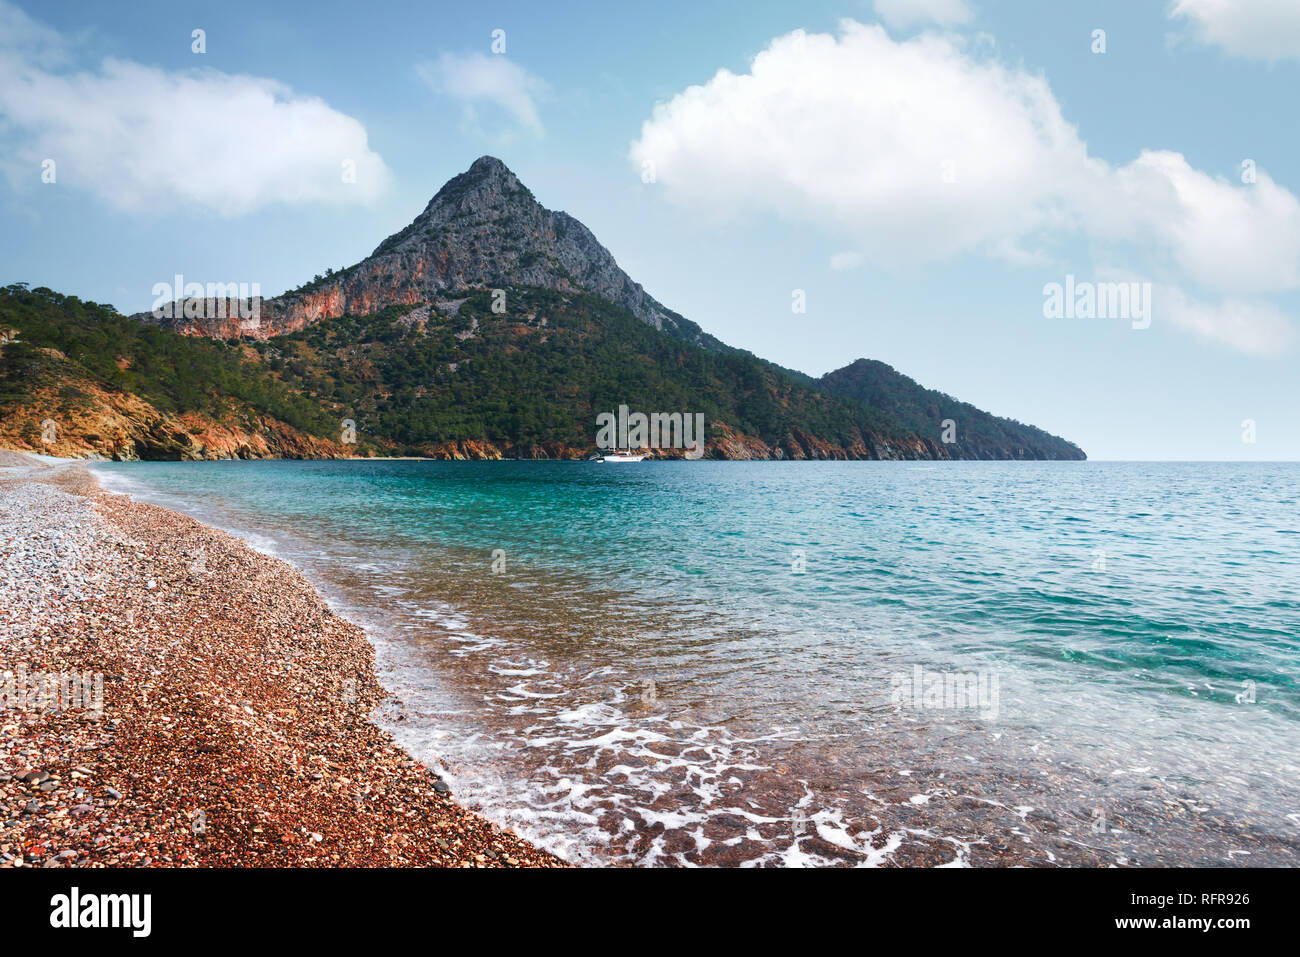 Incredibile paesaggio marino del Mediterraneo in Adrasan, Turchia. Fotografia di paesaggi Foto Stock